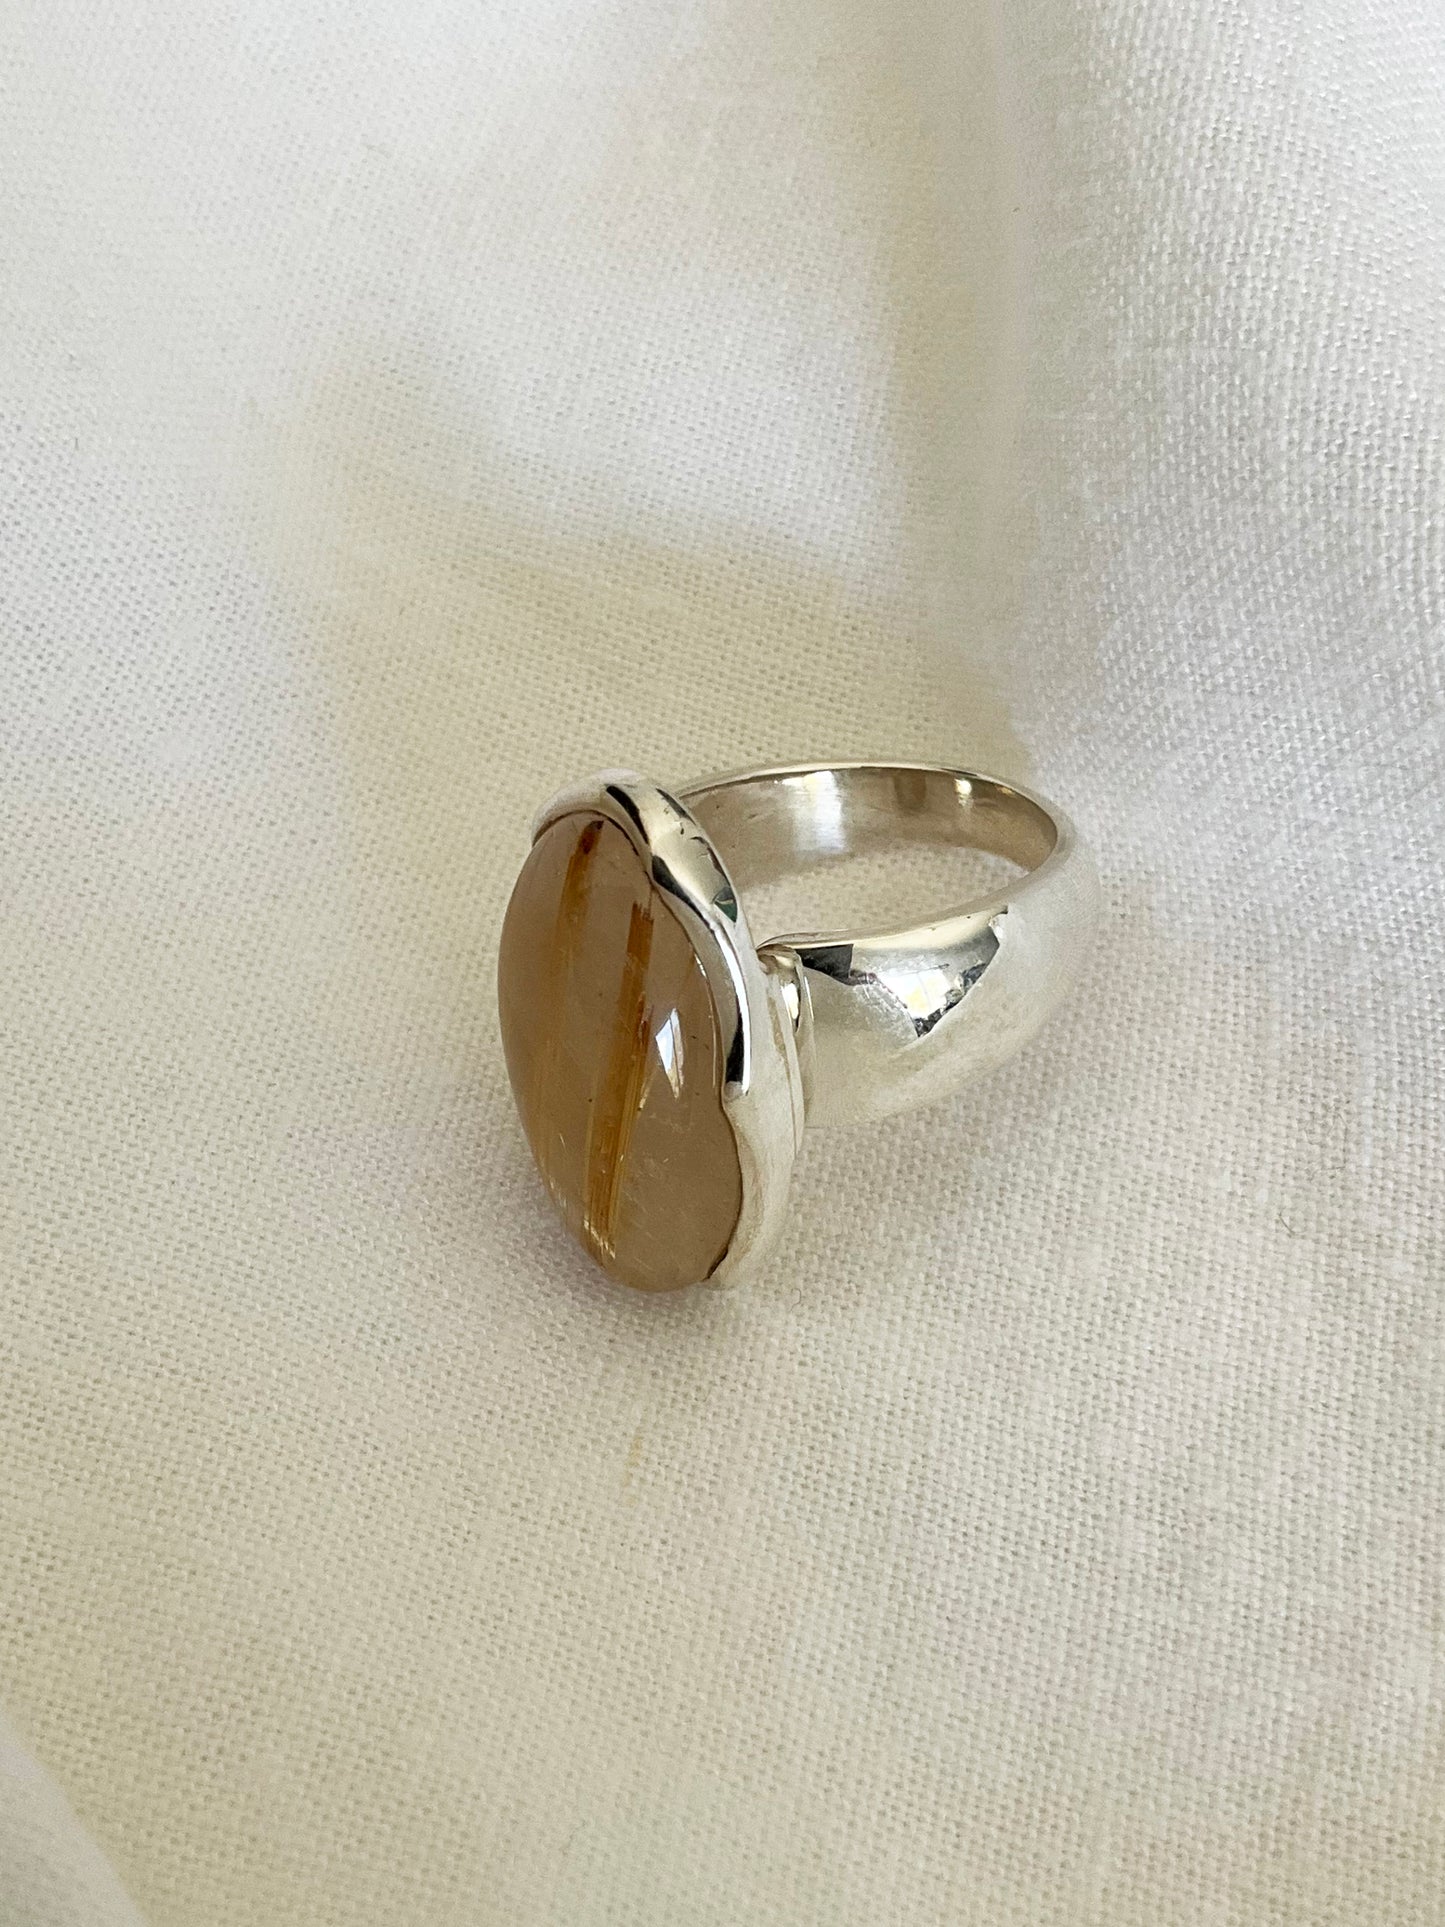 Golden Rutile Quartz Ring